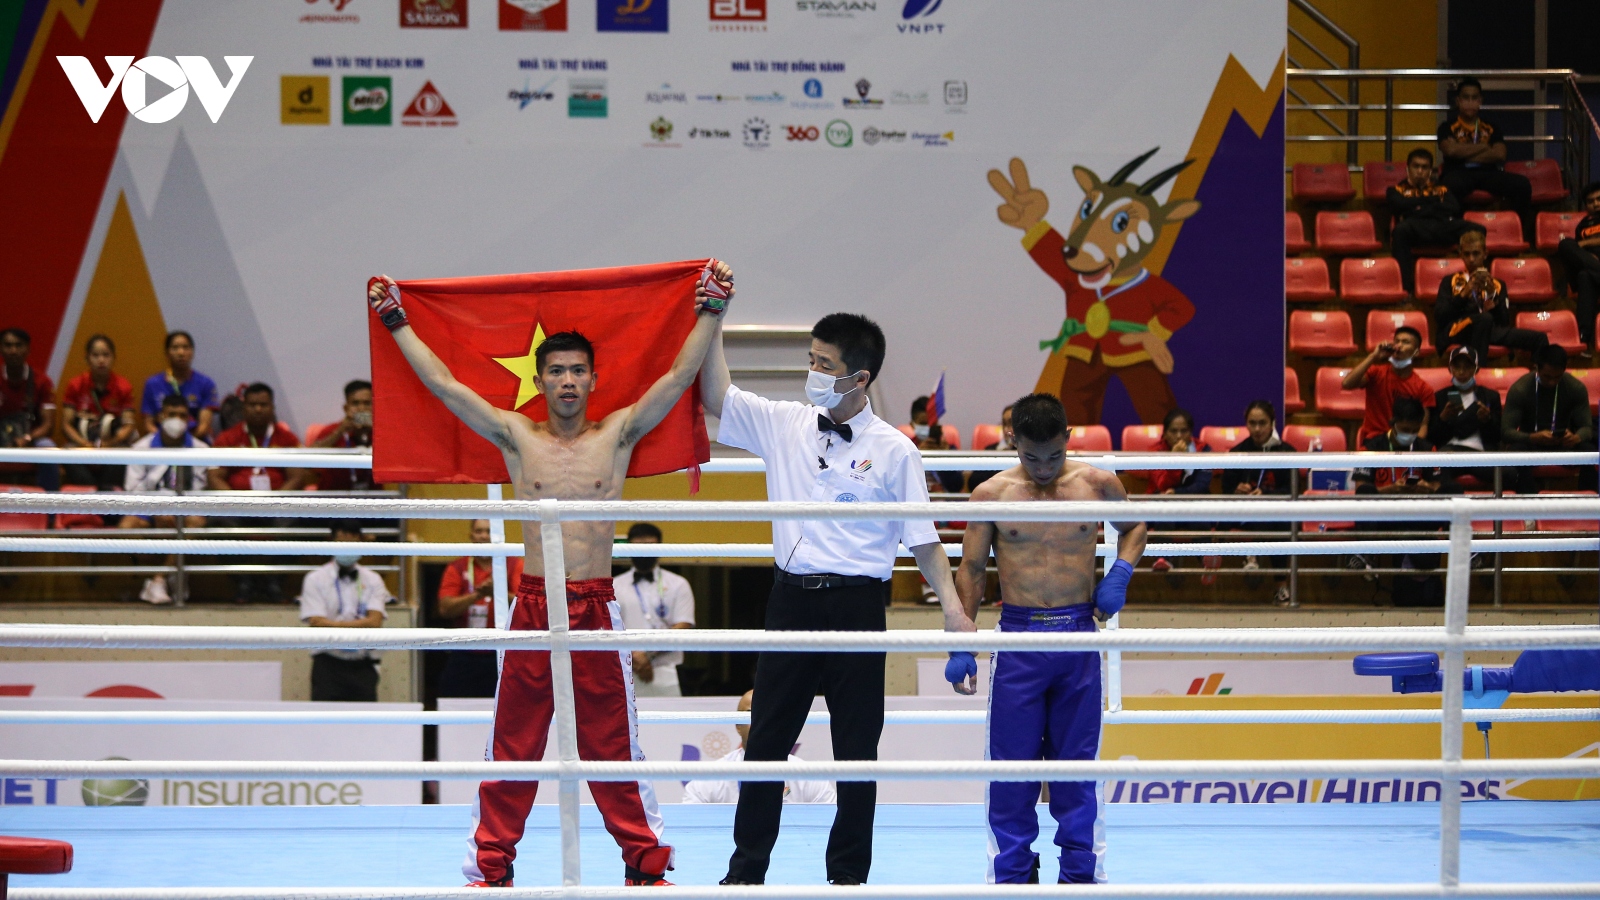 Võ sĩ Kick boxing Việt Nam hạ gục đối thủ, giành điểm tuyệt đối tại SEA Games 31